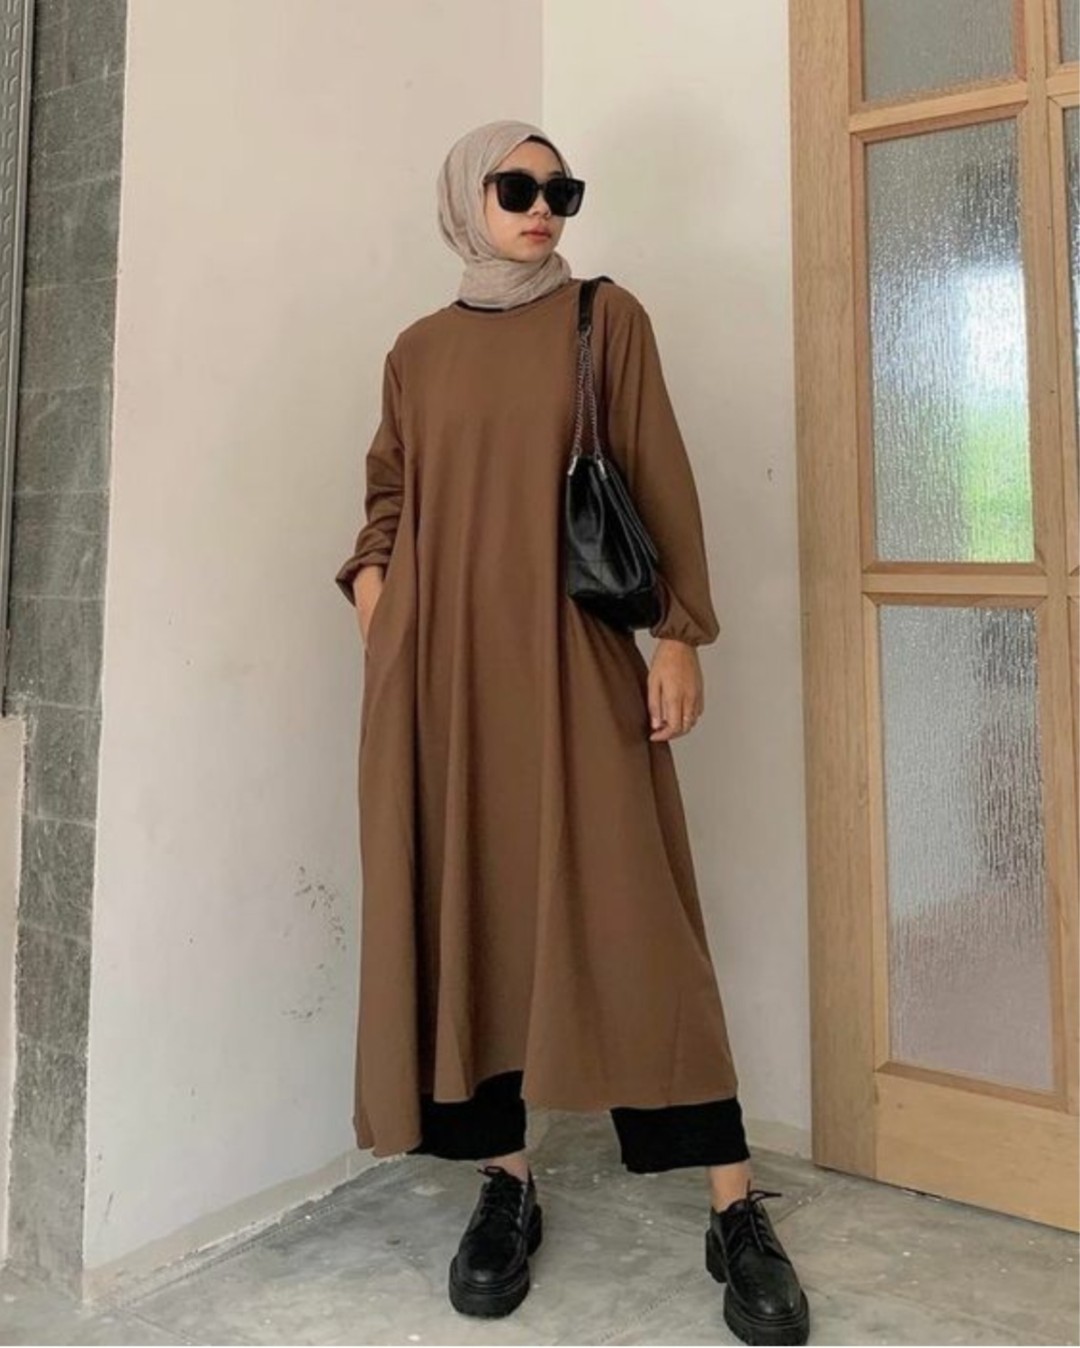 Kombinasi Warna Baju Cokelat Tua Cocok Dengan Jilbab Warna Apa